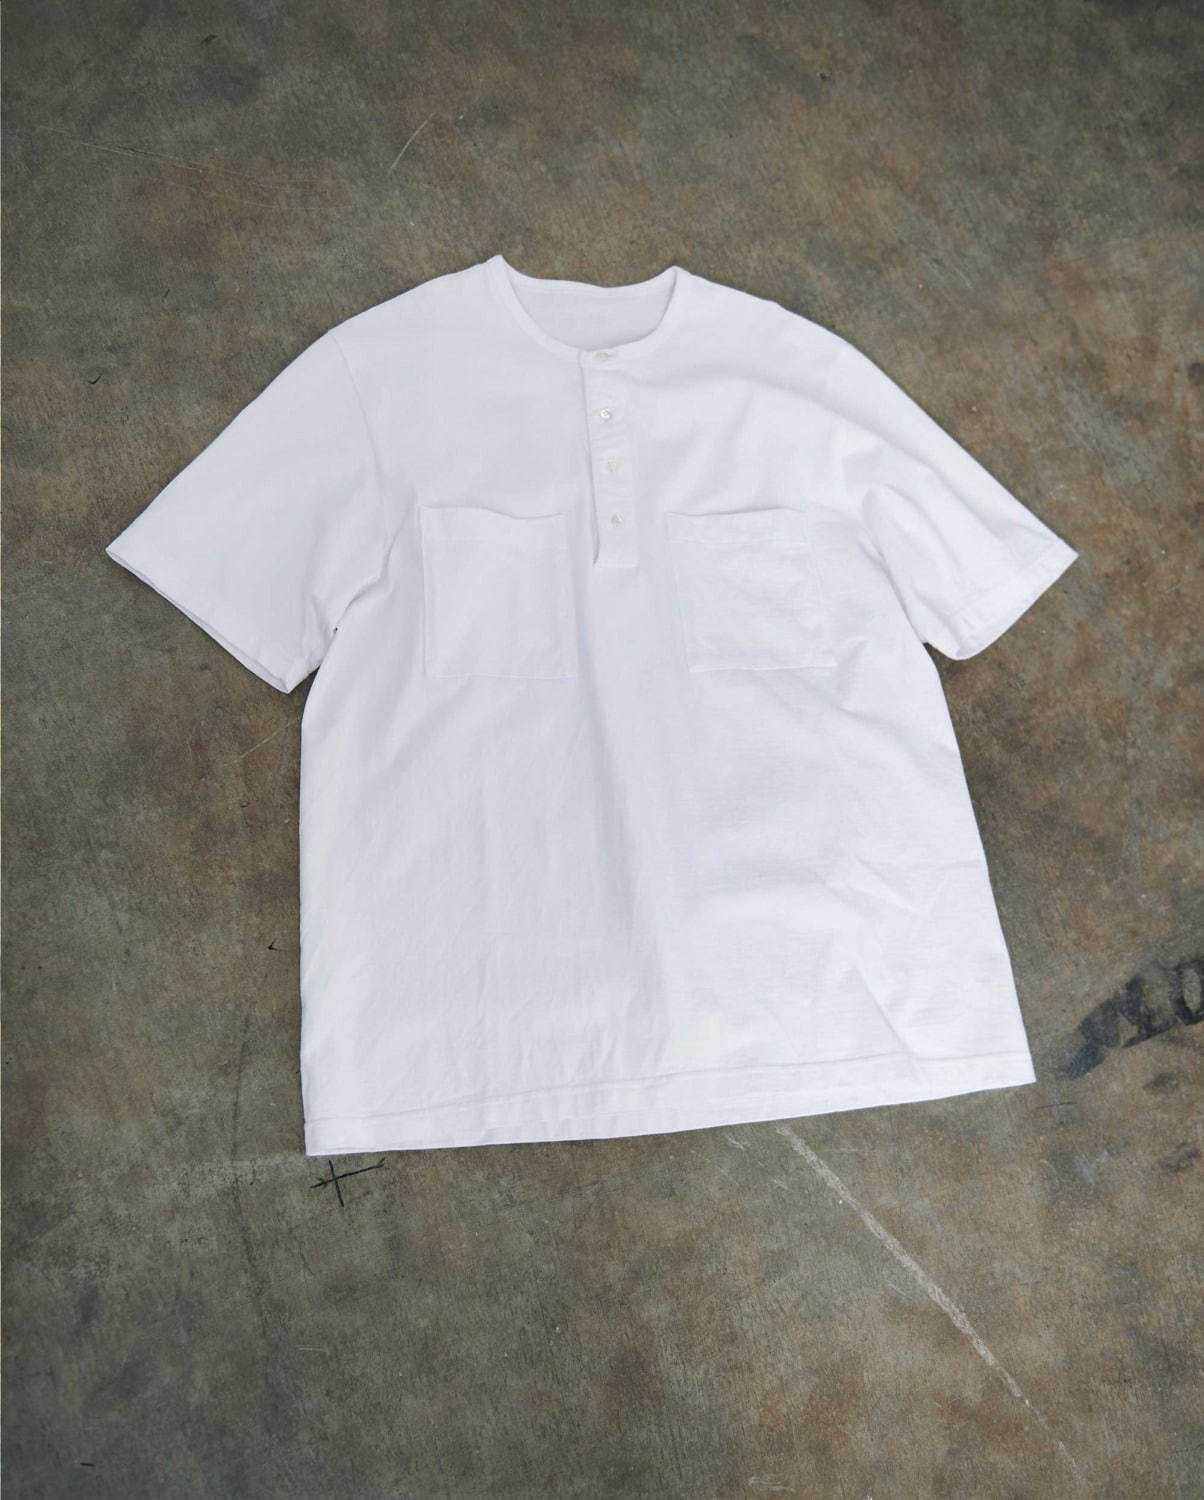 ヘンリーネック Tシャツ(ホワイト) 12,000円